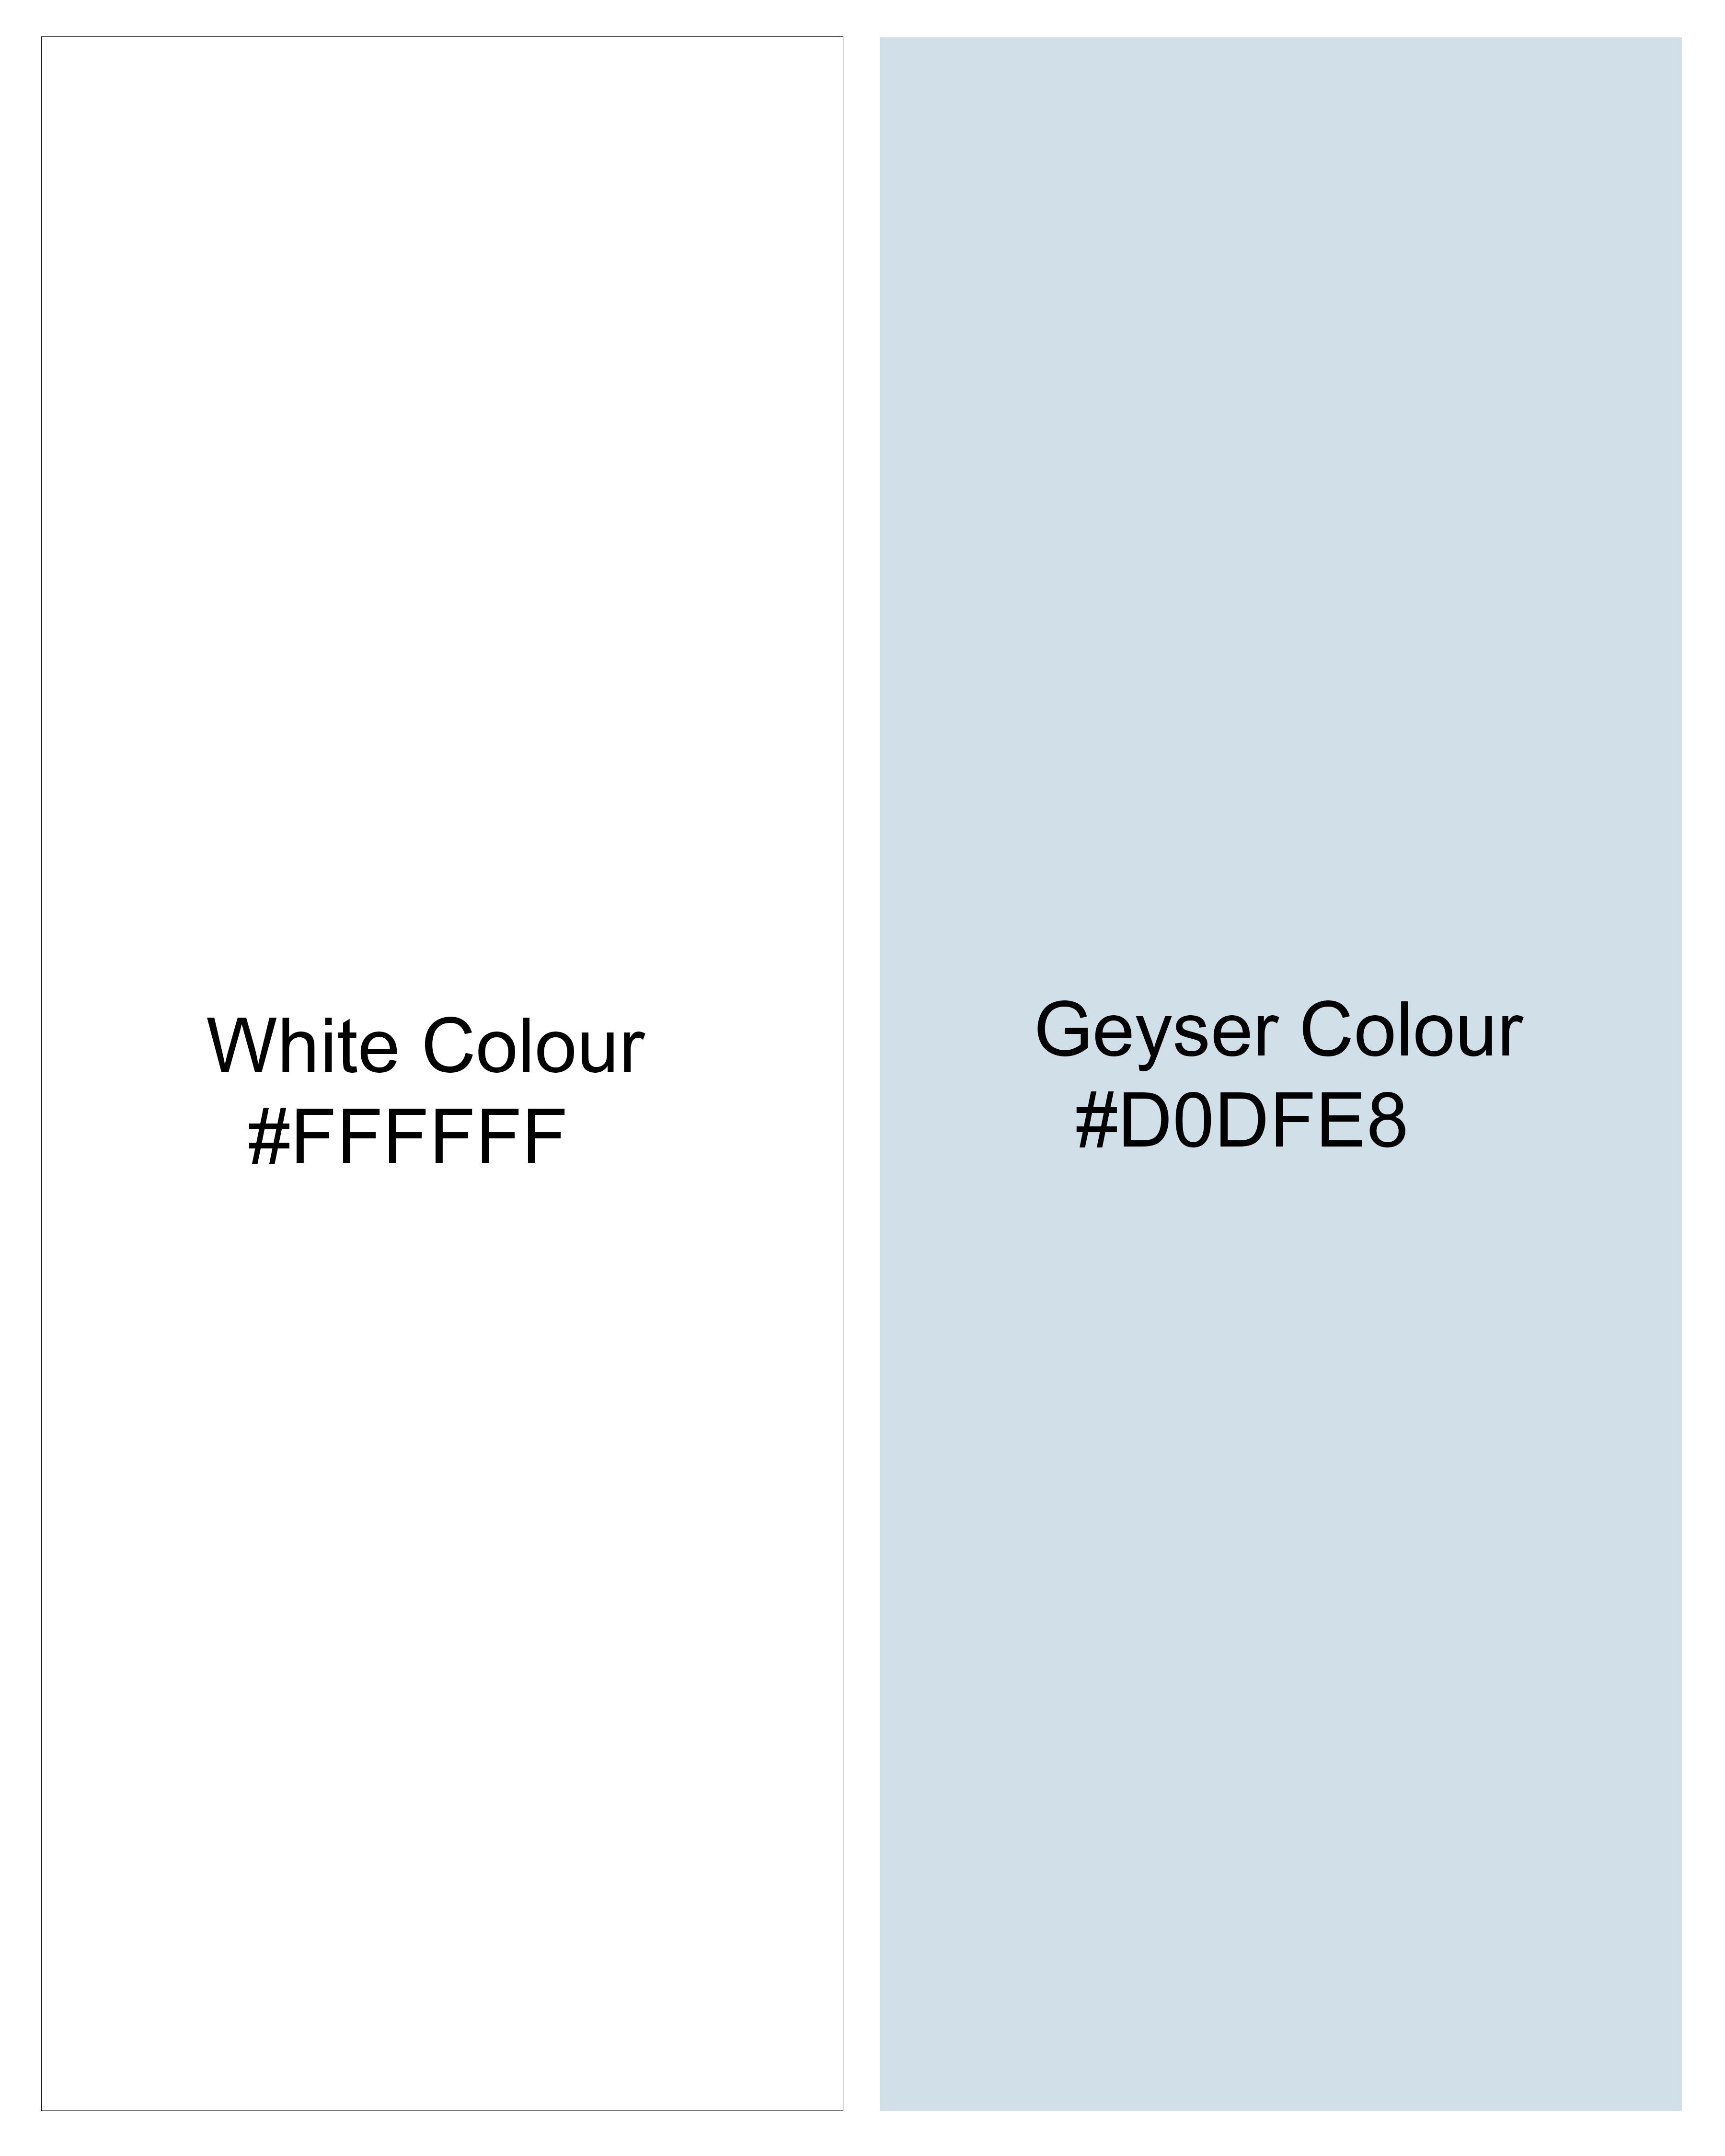 Bright White with Geyser Blue Twill Striped Premium Cotton Kurta Shirt 9267-KS-38,9267-KS-H-38,9267-KS-39,9267-KS-H-39,9267-KS-40,9267-KS-H-40,9267-KS-42,9267-KS-H-42,9267-KS-44,9267-KS-H-44,9267-KS-46,9267-KS-H-46,9267-KS-48,9267-KS-H-48,9267-KS-50,9267-KS-H-50,9267-KS-52,9267-KS-H-52